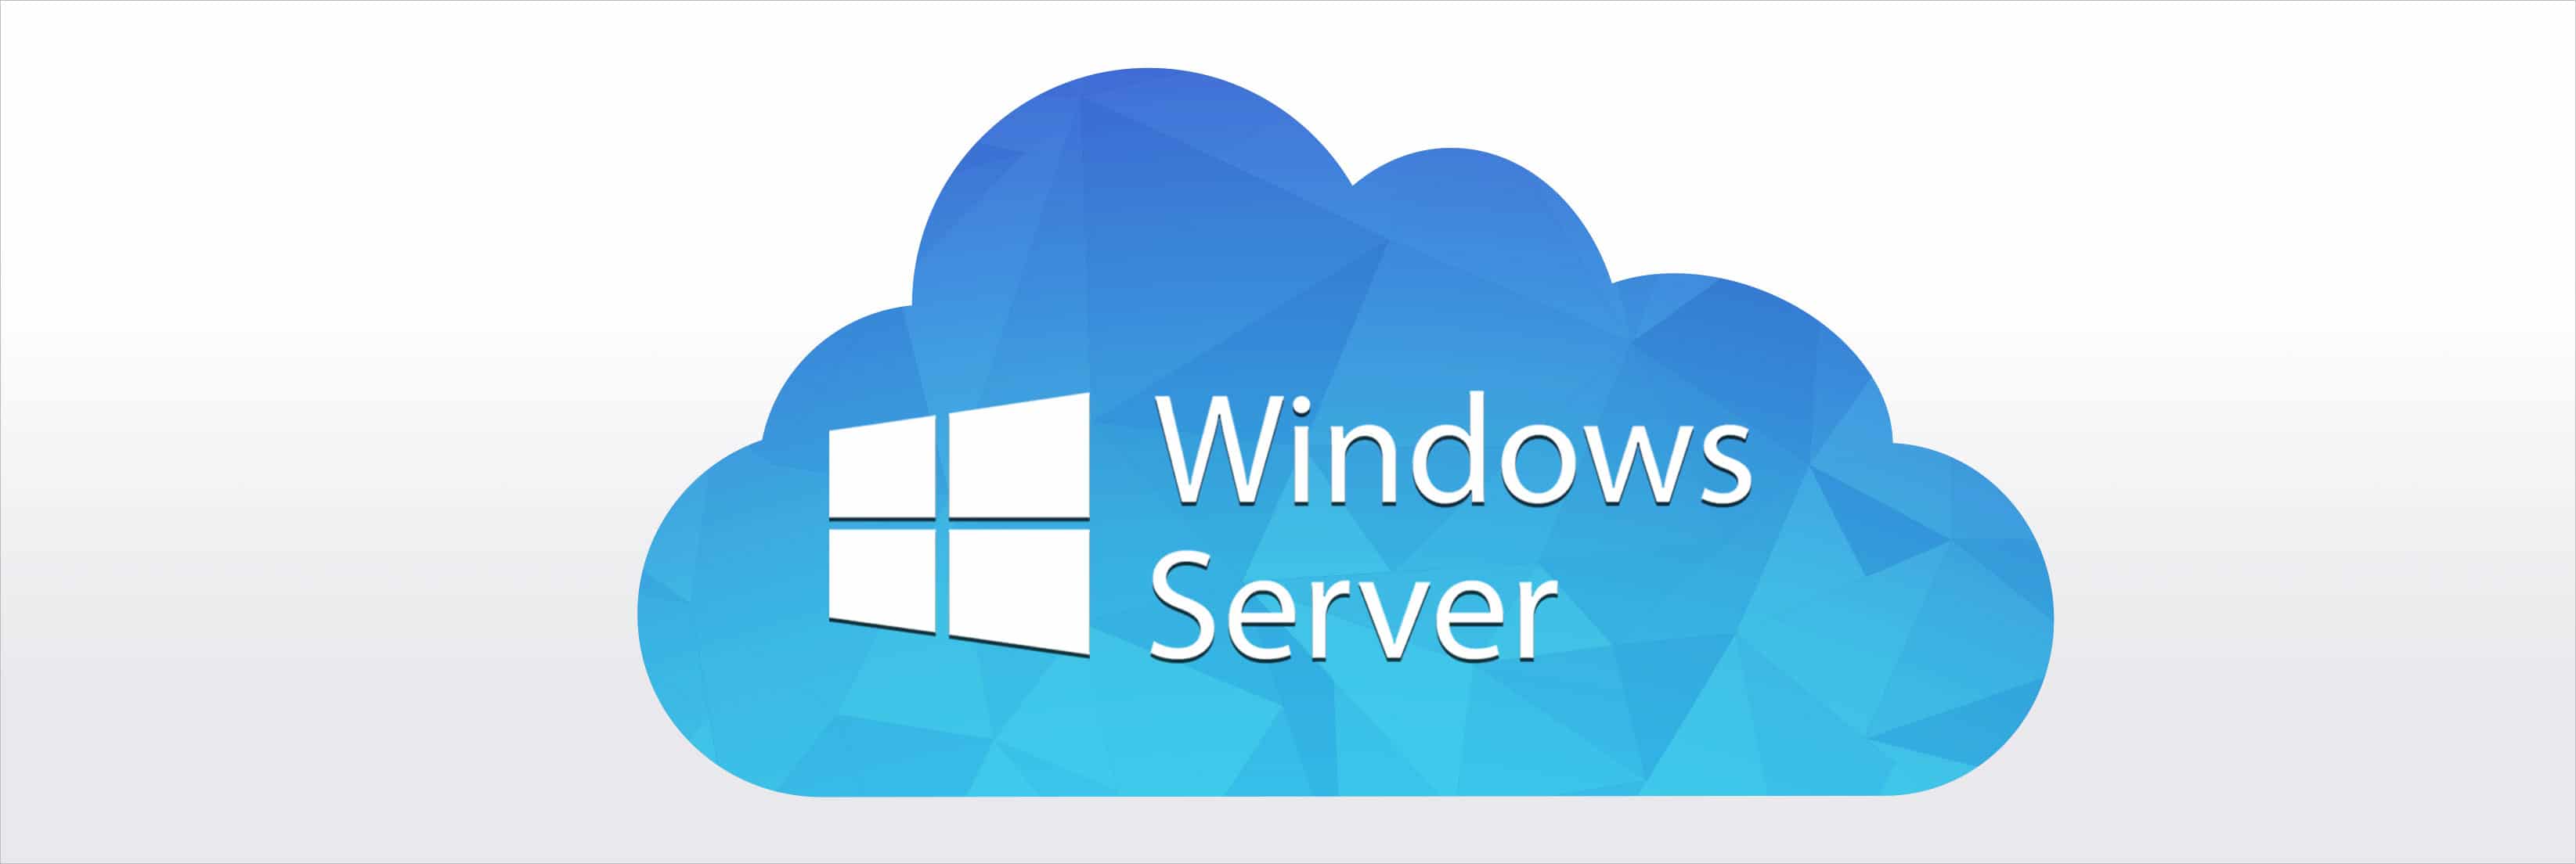 Cloud Windows Hosting (บริการเว็บโฮสติ้งสำหรับวินโดว์)